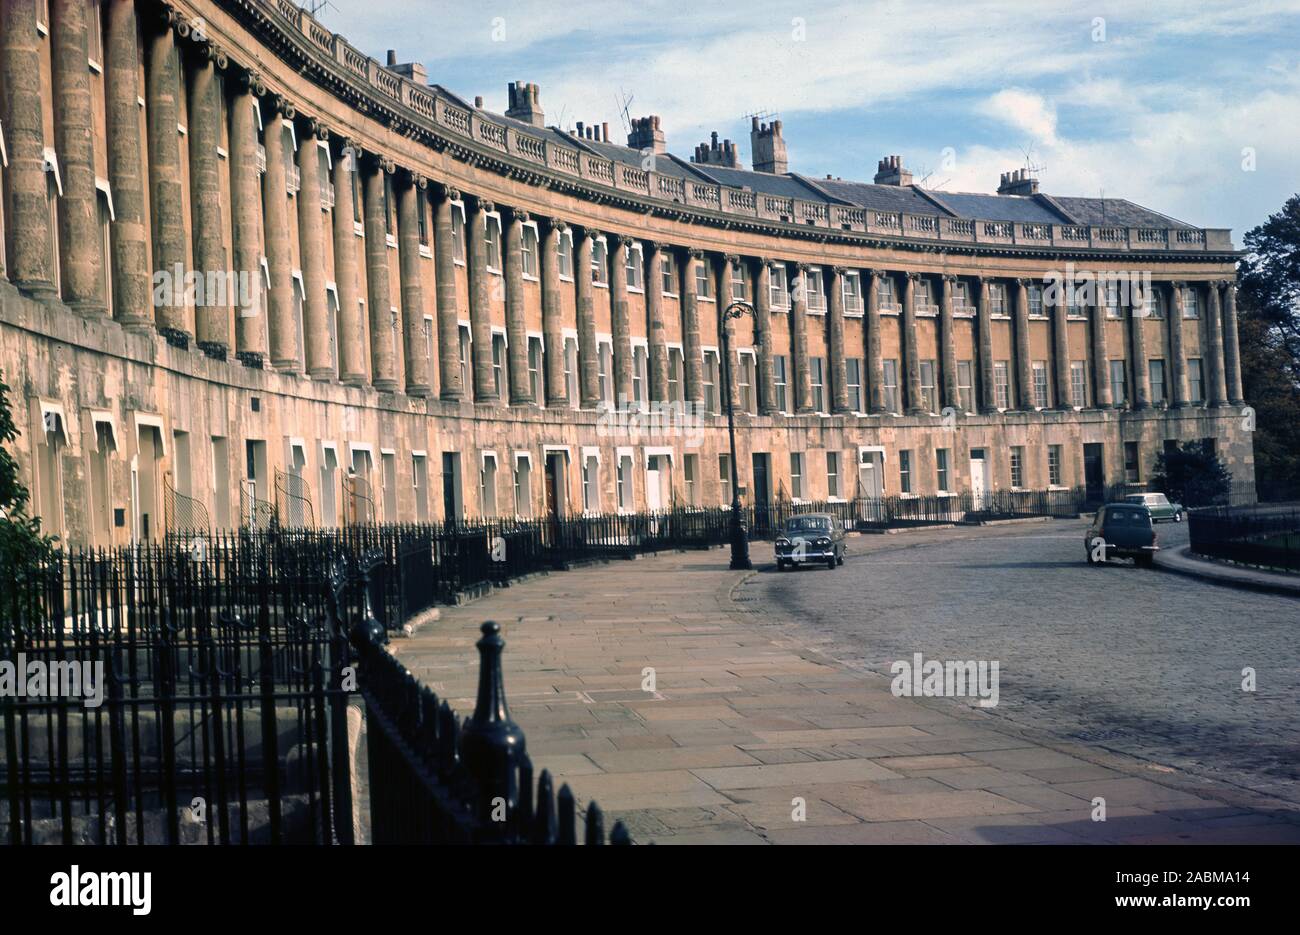 1960, historische, eine Ansicht aus dieser Ära der Royal Cresent, Bath, England, UK. 1774 fertig gestellt, wird diese Zeile von 30 Reihenhäusern in einer geschwungenen Crescent in der Stadt vom Architekten John Wood, der Jüngere, gilt als eines der bedeutendsten Beispiele Georgianischer Architektur in Großbritannien. Stockfoto